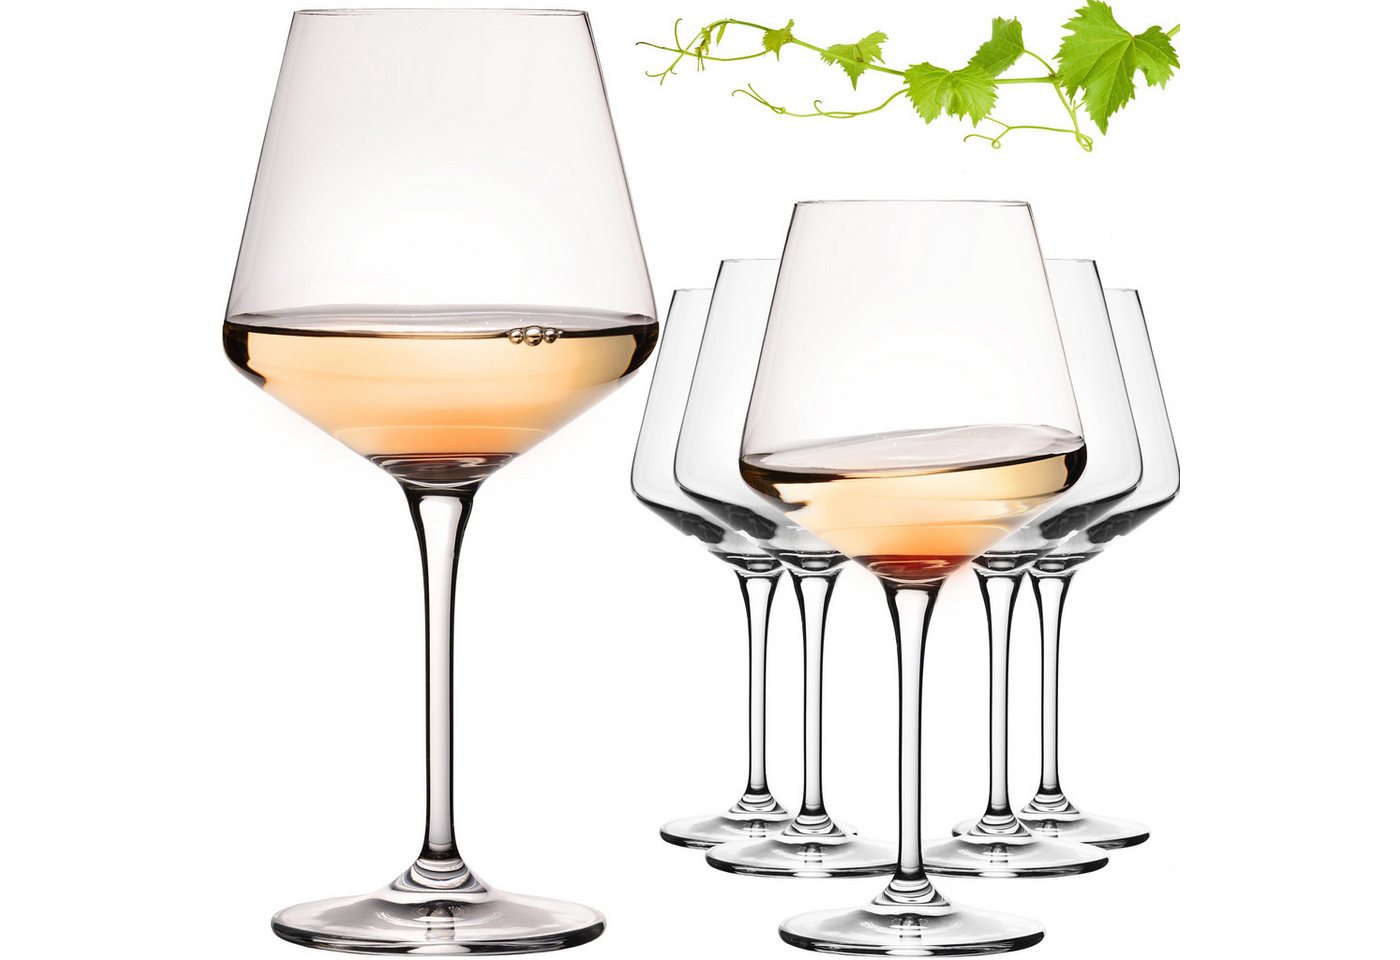 IMPERIAL glass Weinglas Weißweingläser 560ml "Athen" Chardonnay Glas aus Crystalline Glas, Crystalline Glas, Weingläser Set 6-Teilig Klangvoll Spülmaschinenfest von IMPERIAL glass